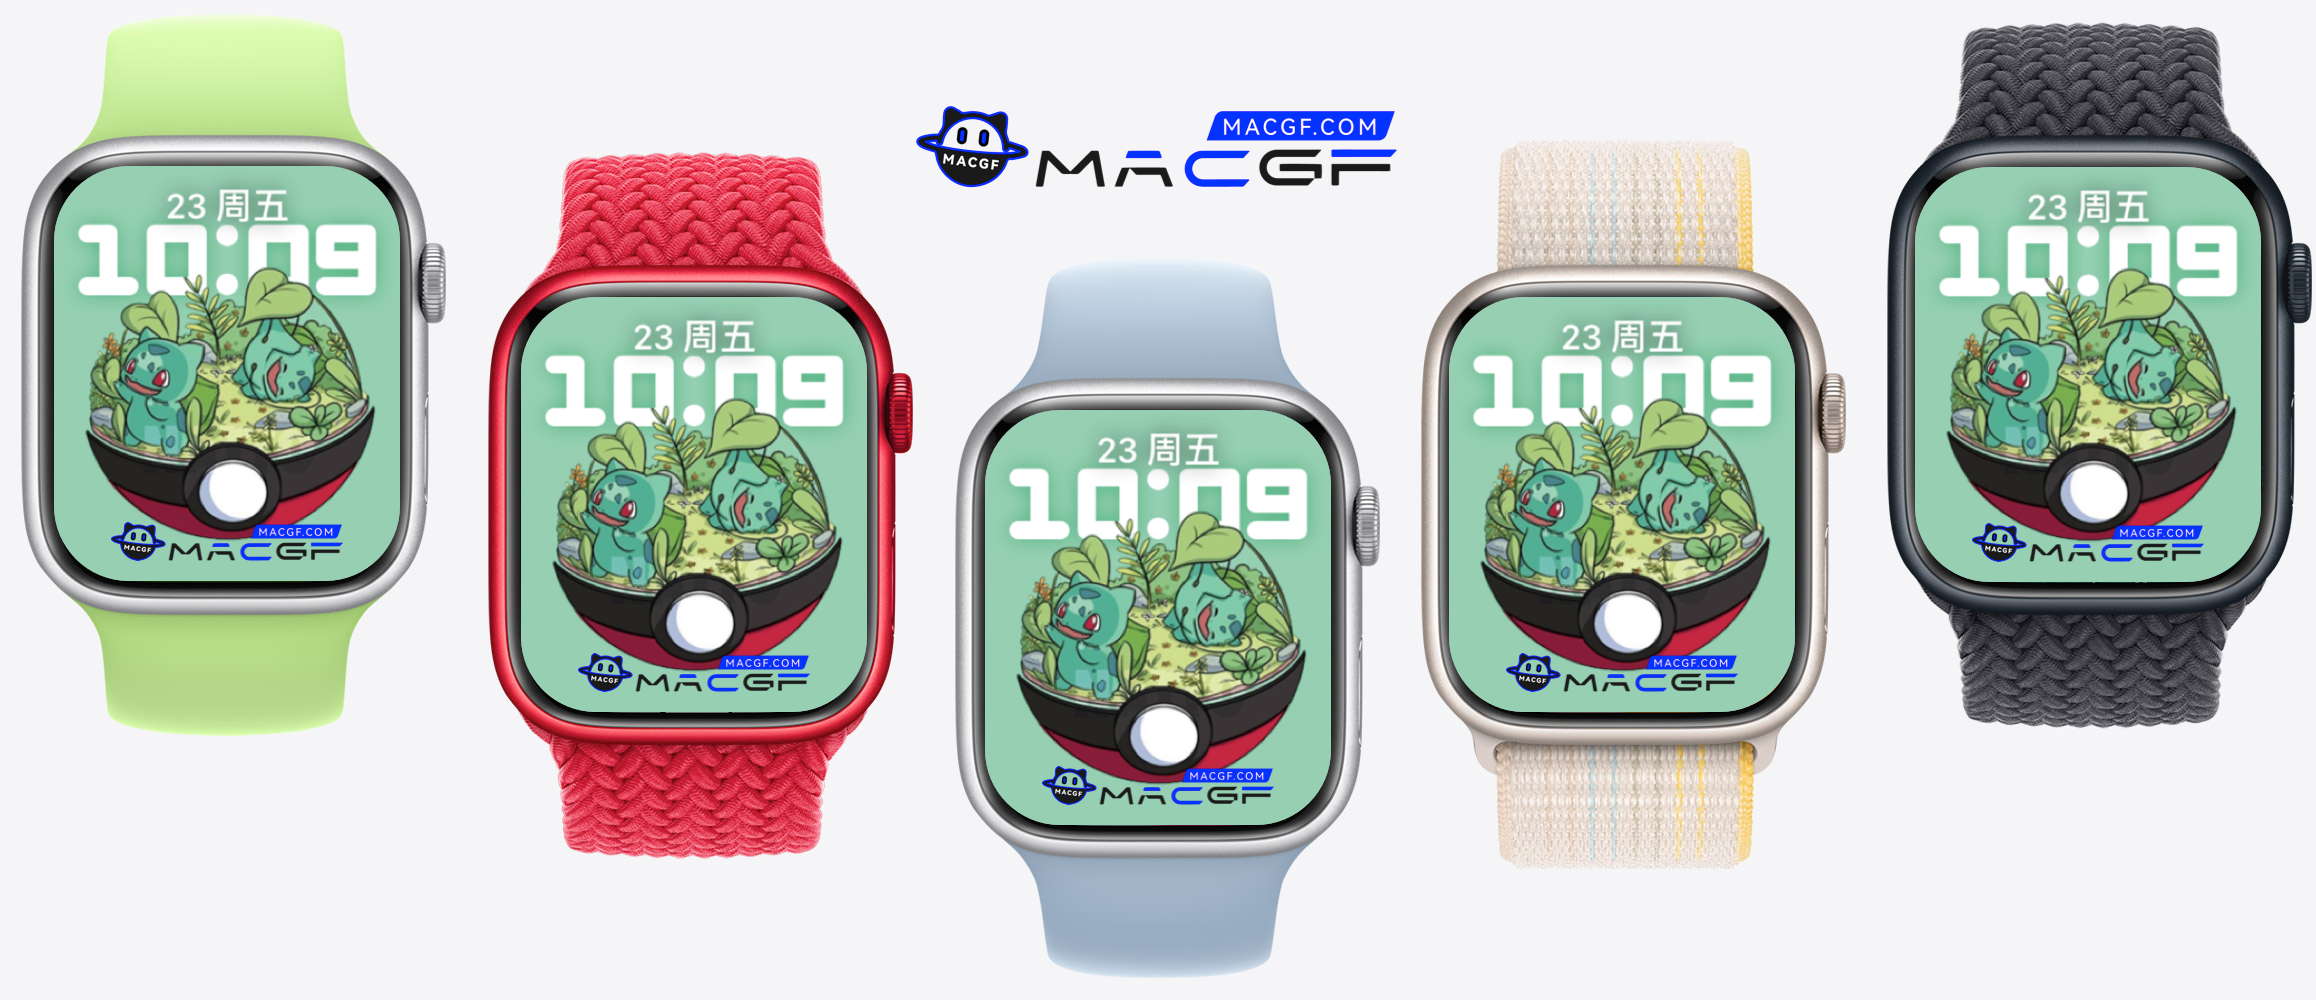 宝可梦 精灵球 妙蛙种子 苹果 Apple Watch 景深人像表盘 - macGF